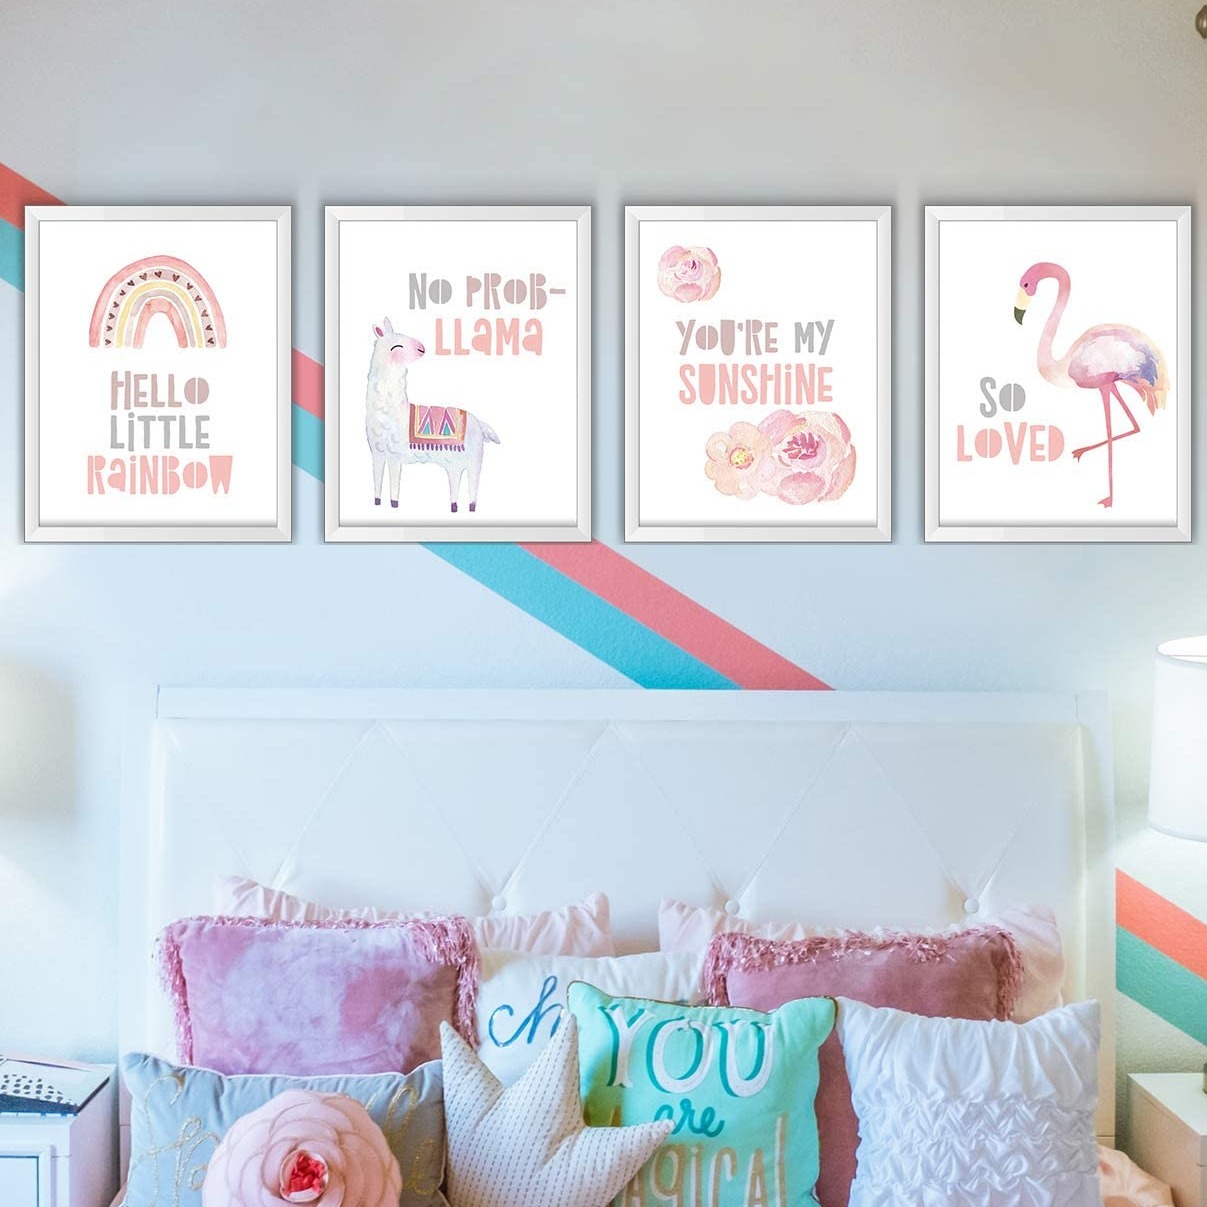 粉色女孩儿主题墙面装饰海报4张，不含相框